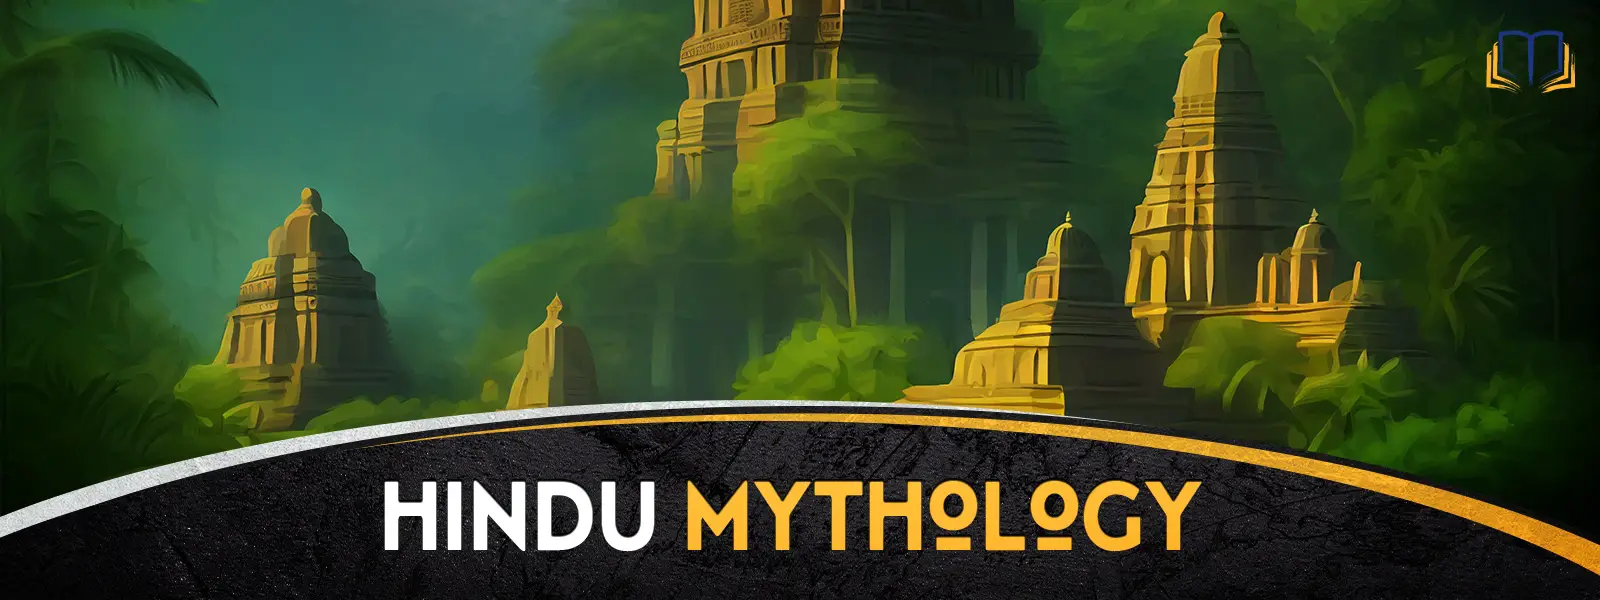 Hindu Mythology Hub Landscape